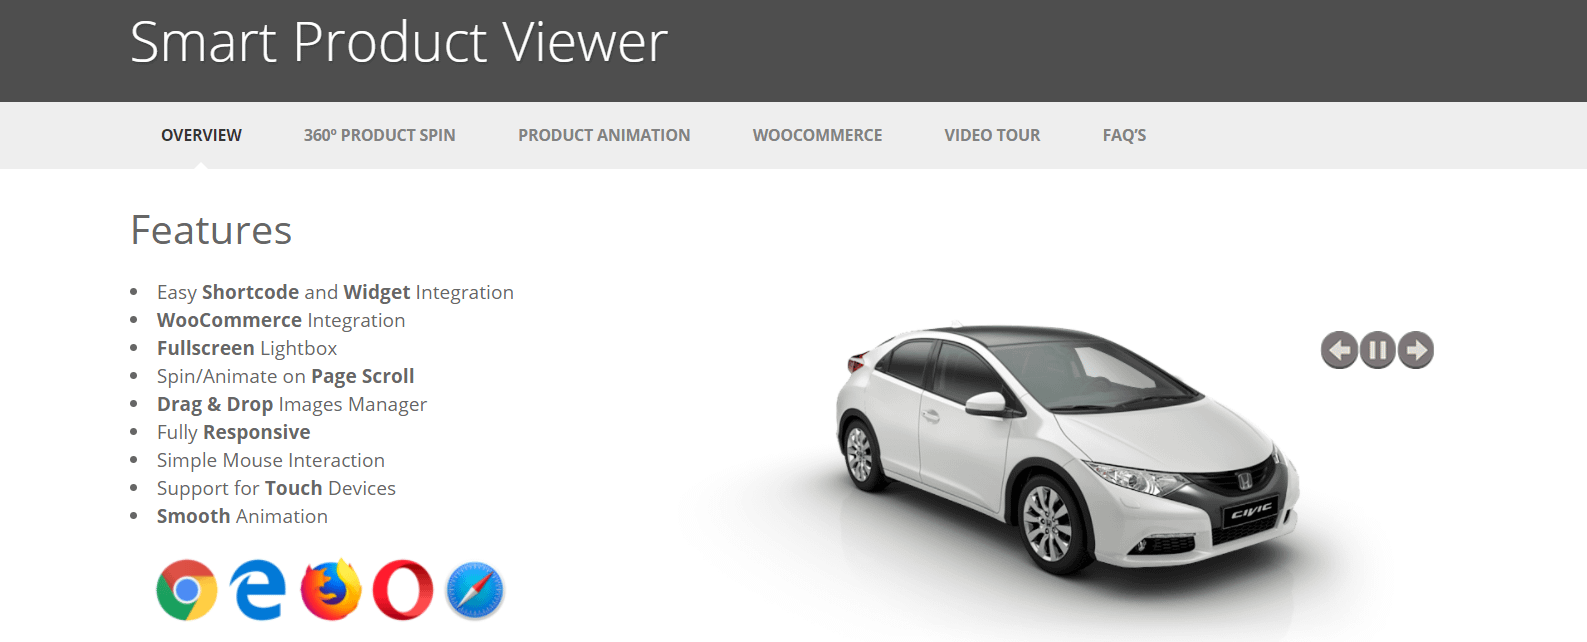 Плагин Smart Product Viewer — один из самых доступных плагинов WordPress для электронной коммерции.